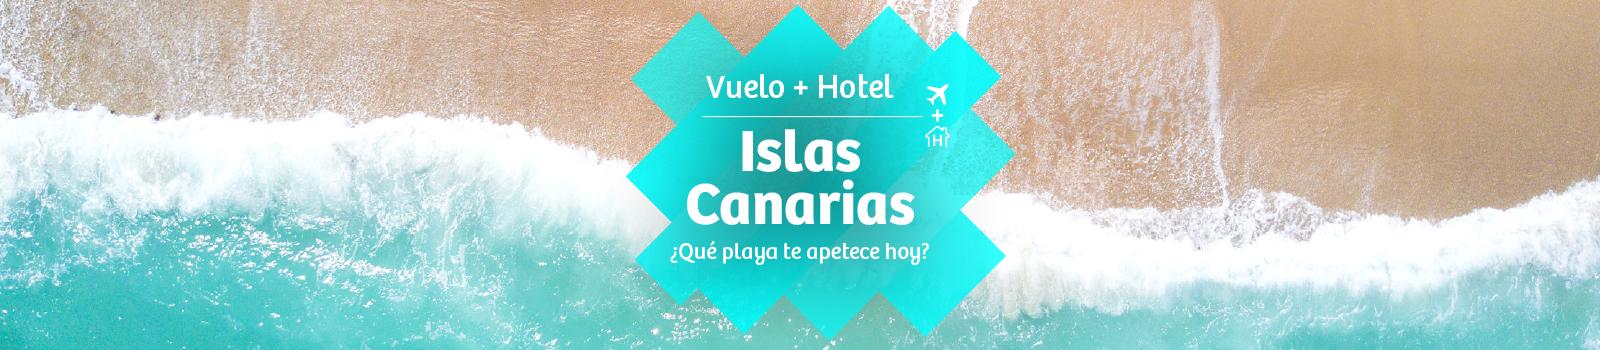 calor identificación Abuelos visitantes Vuelo + Hotel Islas Canarias. Ofertas 2022 | Viajes Carrefour